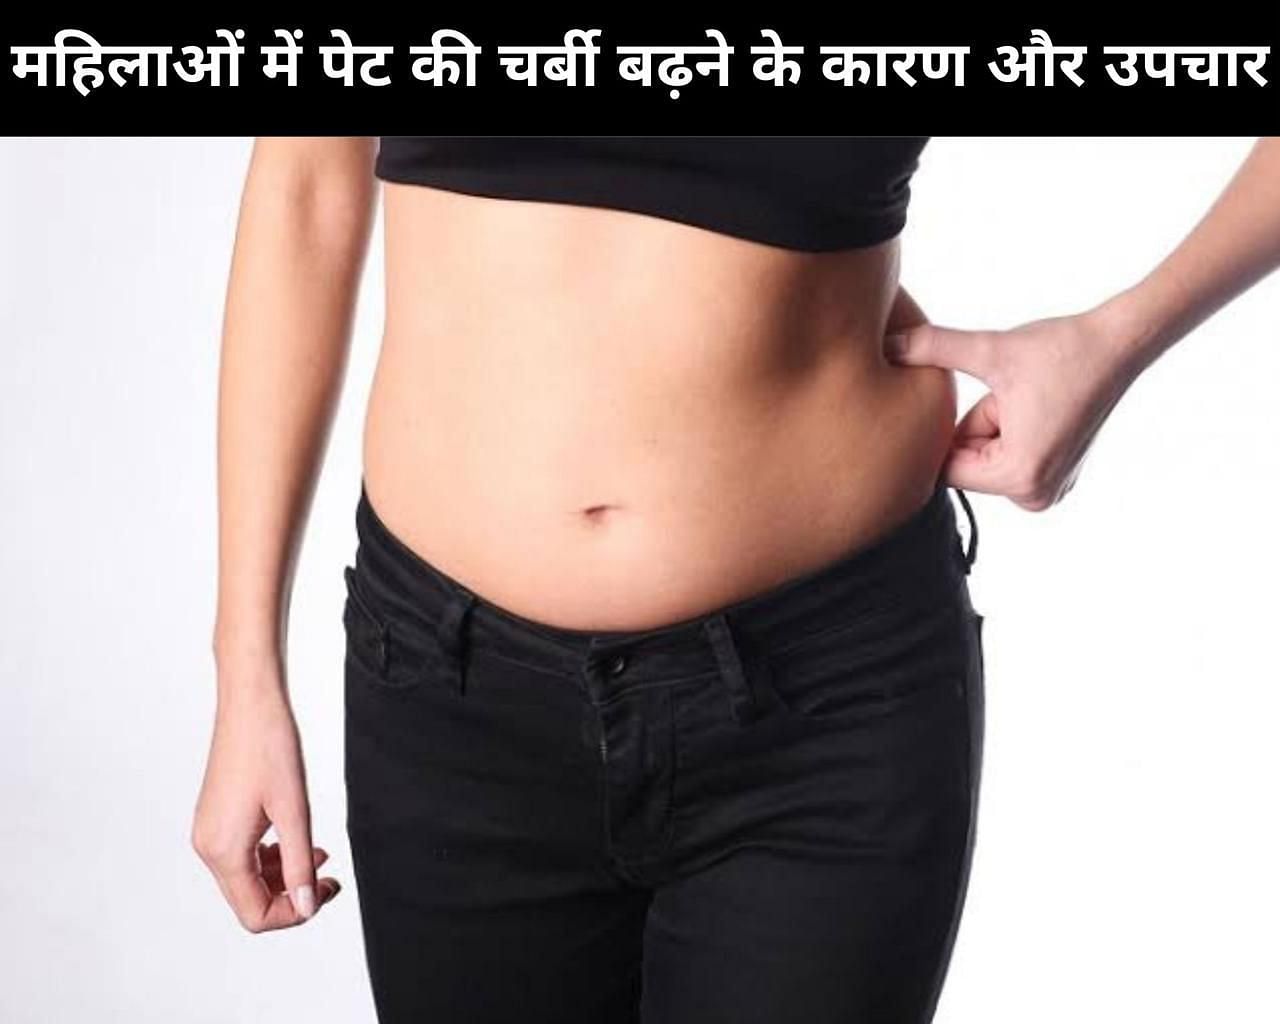 महिलाओं में पेट की चर्बी बढ़ने के कारण और उपचार (फोटो - sportskeedaहिन्दी)